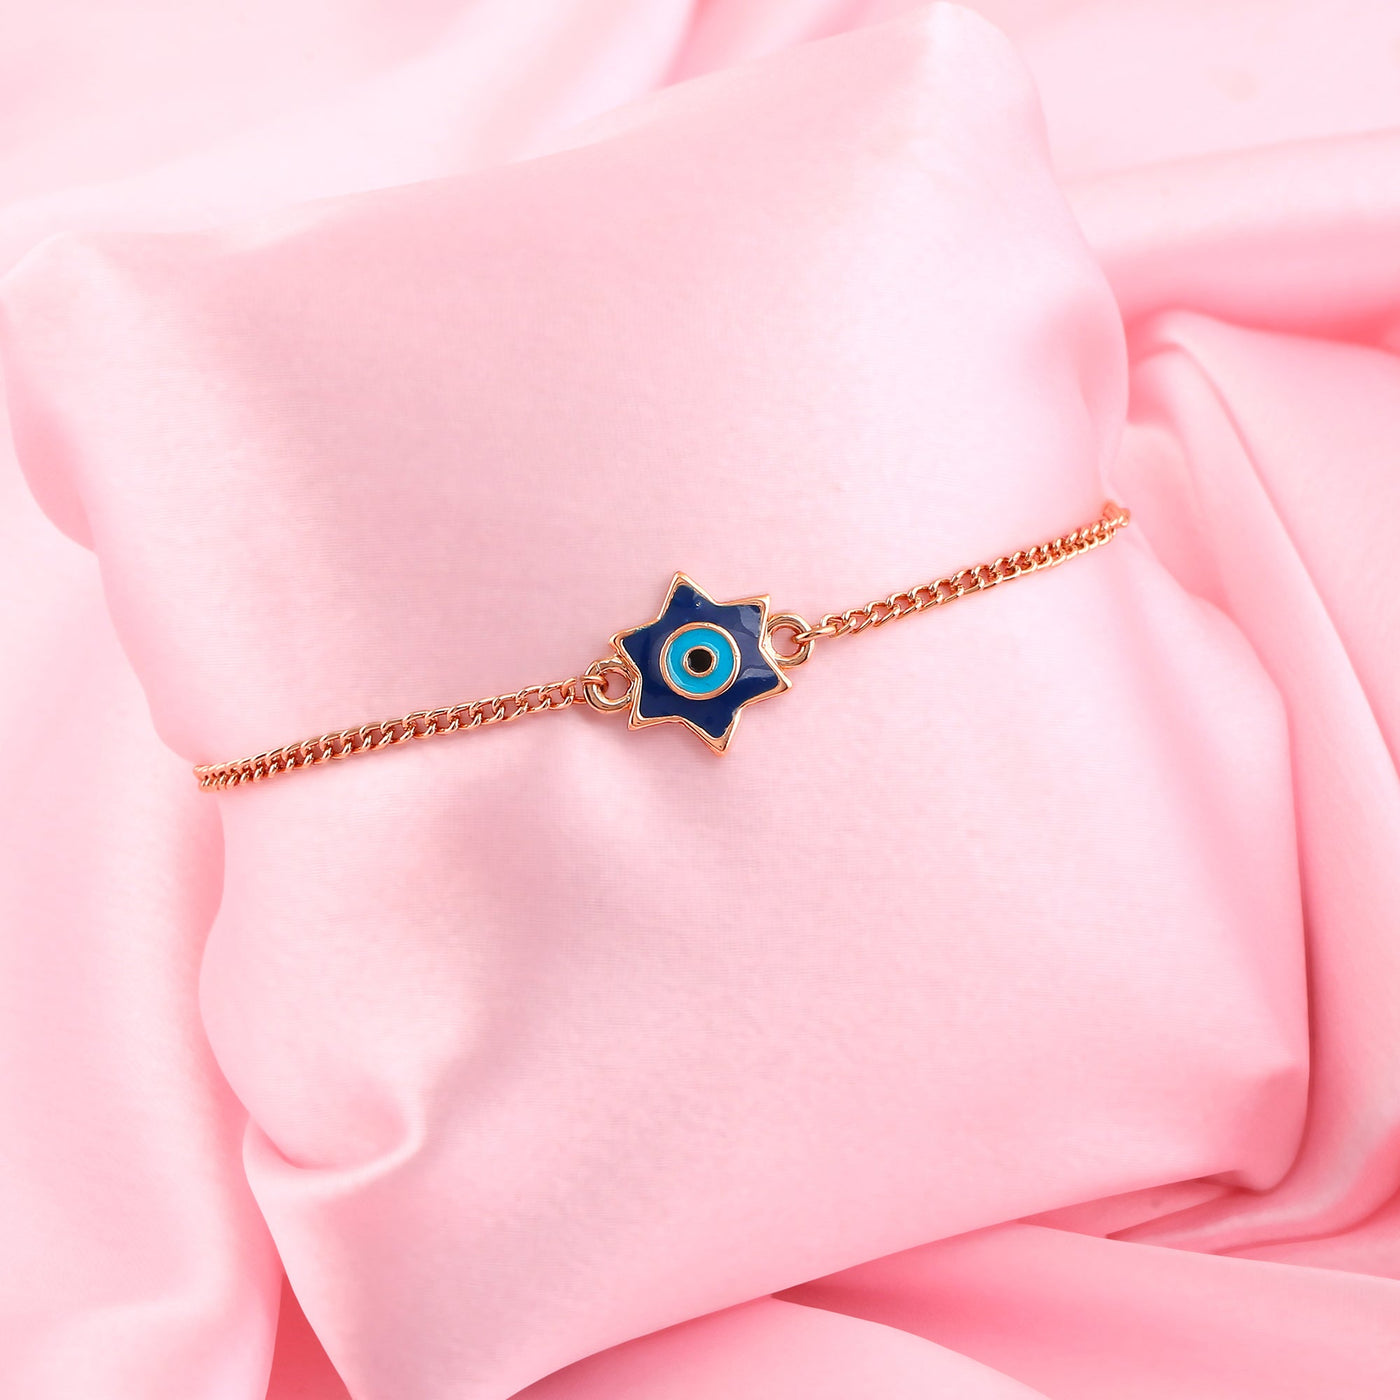 Estele Rose Gold Plated Elegant Star Design Evil Eye Navy Blue & Enamel Charm Bracelet